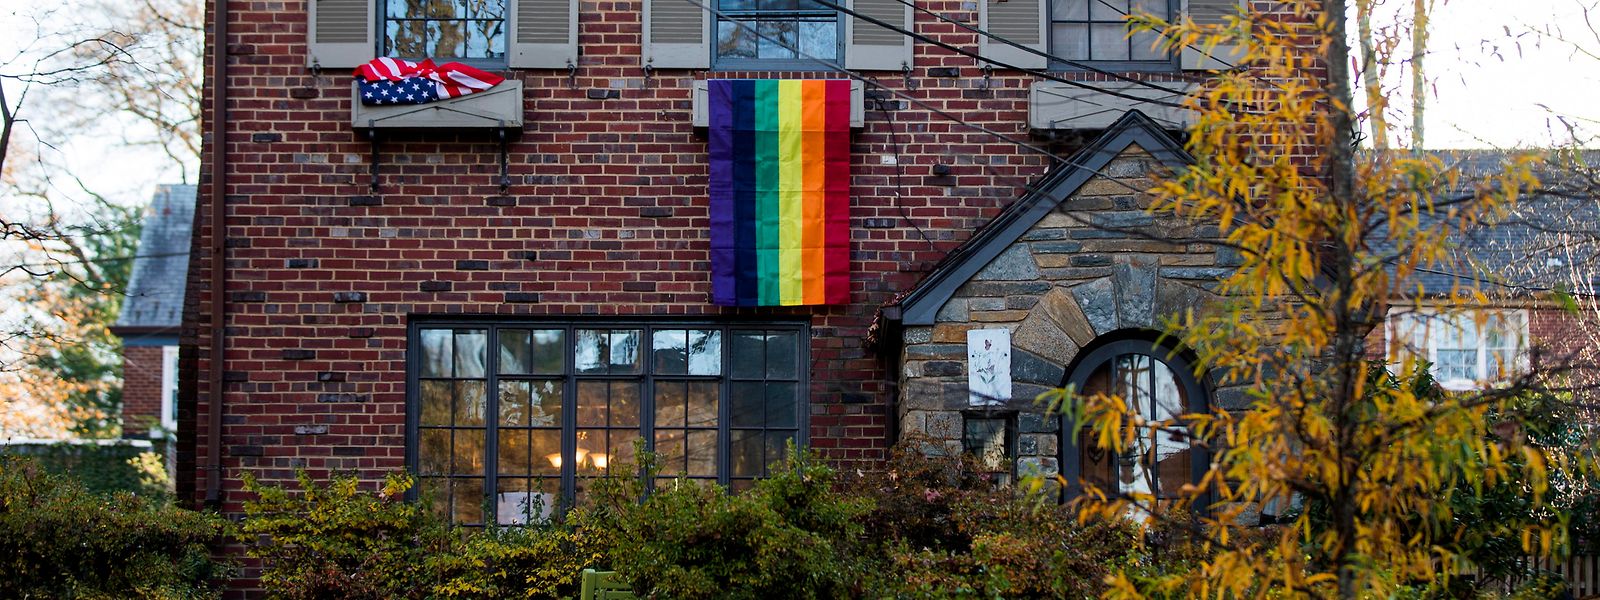 Bewohner von Chevy Chase, die neben dem Haus wohnen, das der damals designierte Vizepräsident Pence vorübergehend gemietet hat, bevor er in das Naval Observatory umzieht, zeigen LGBT-Pride-Fahnen an der Vorderseite ihrer Häuser.